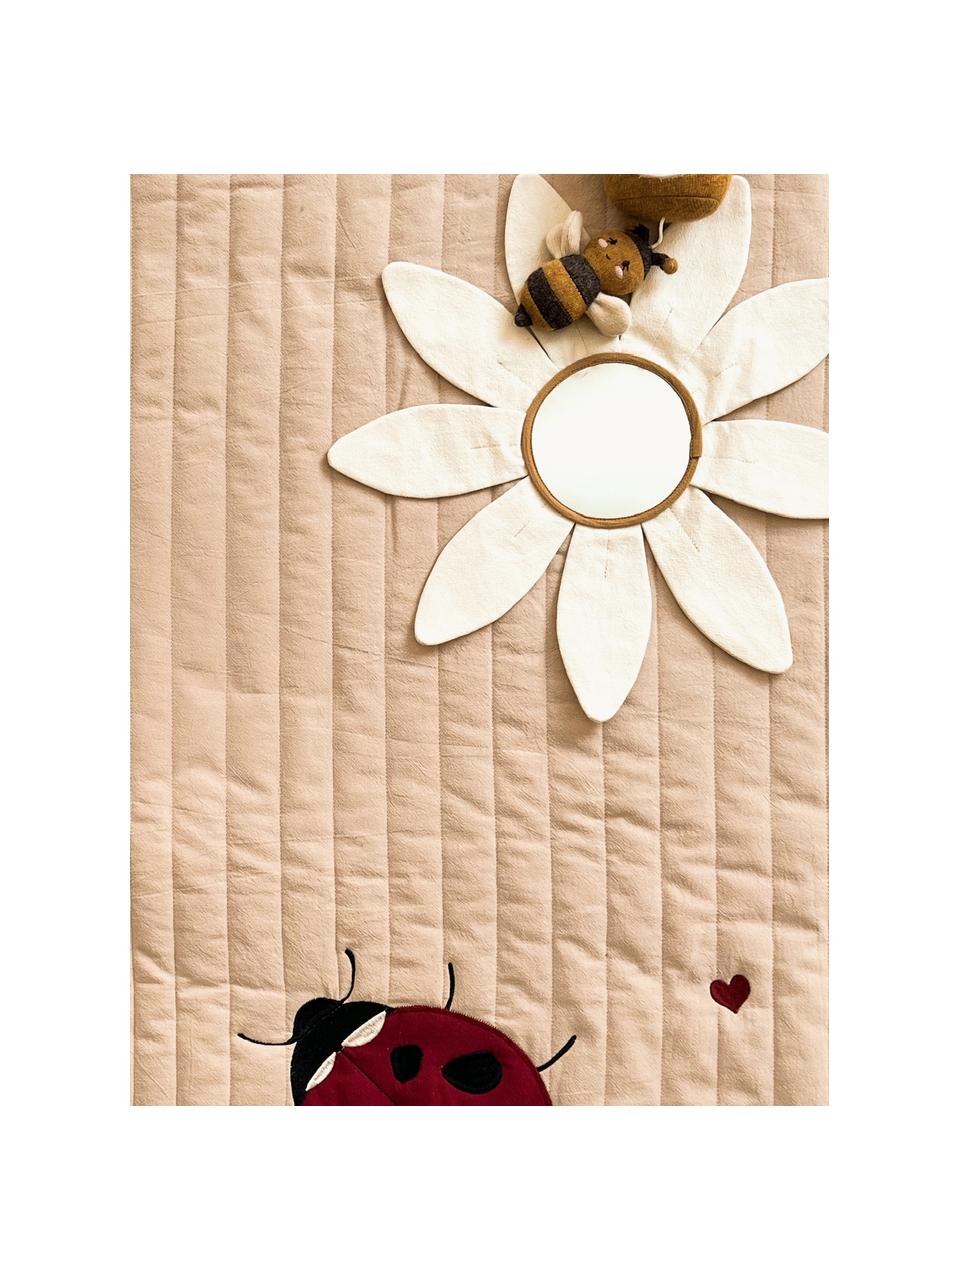 Manta de juegos Ladybug, 100% algodón, Beige, multicolor, An 120 x L 120 cm